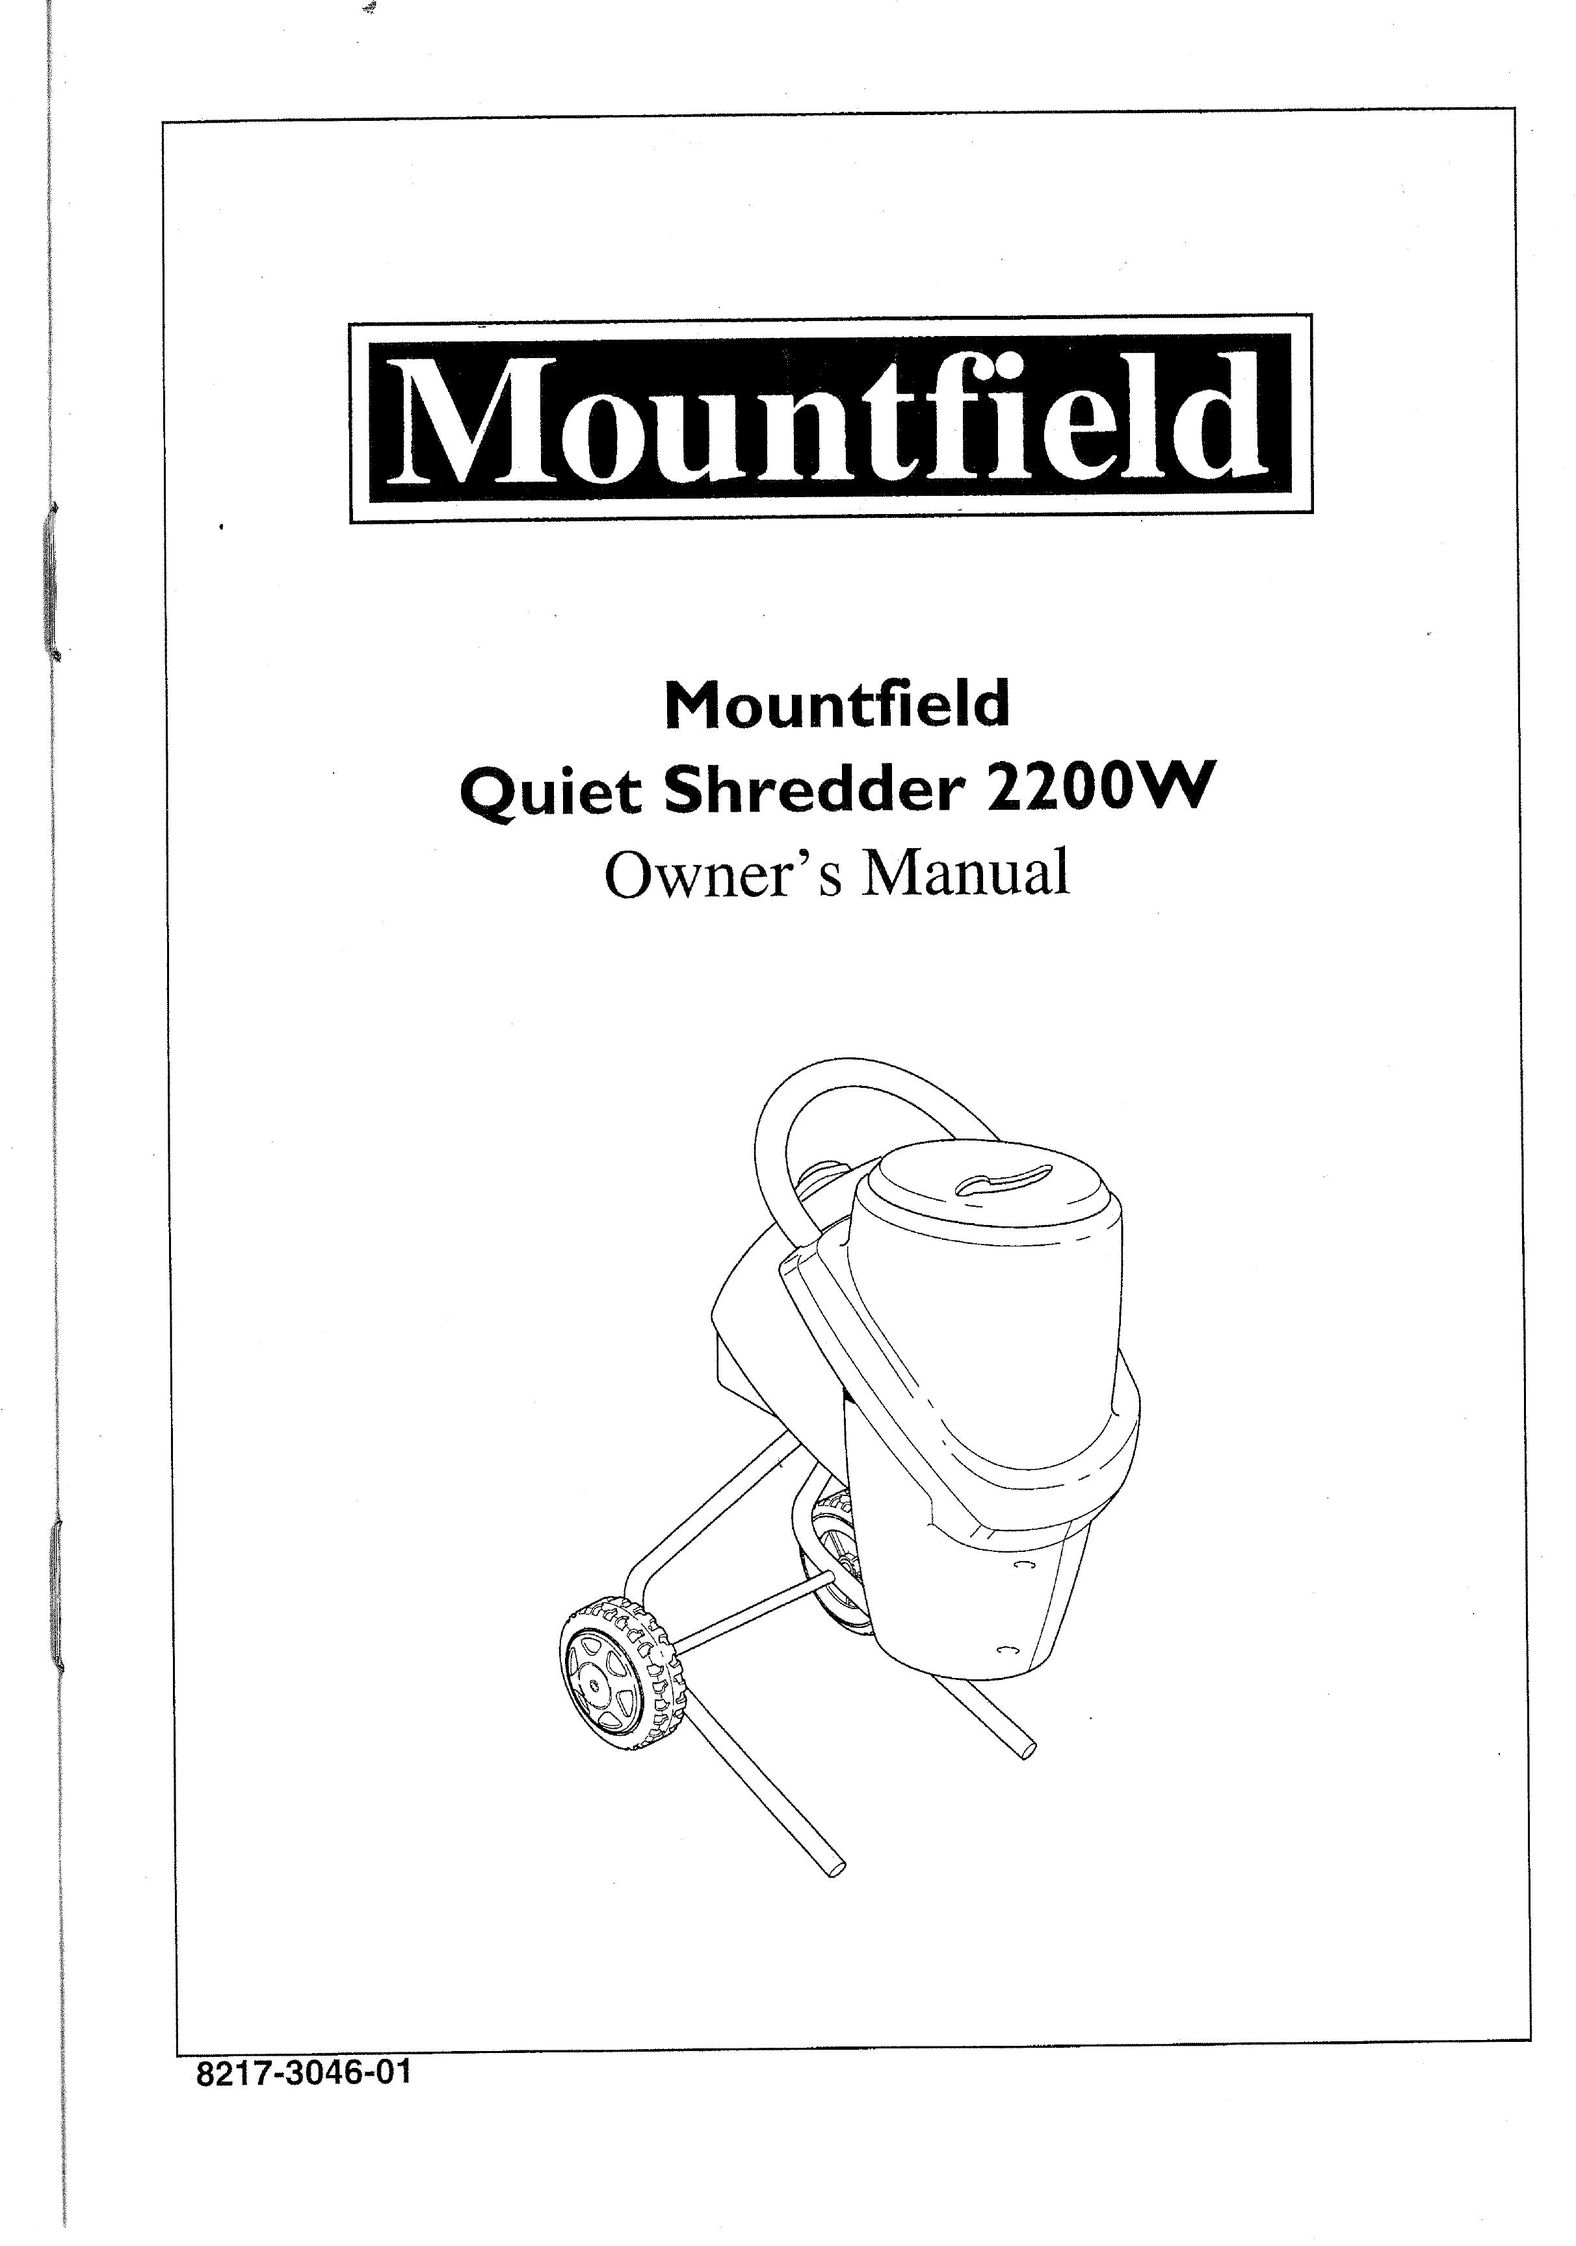 Mountfield 2200W Paper Shredder User Manual